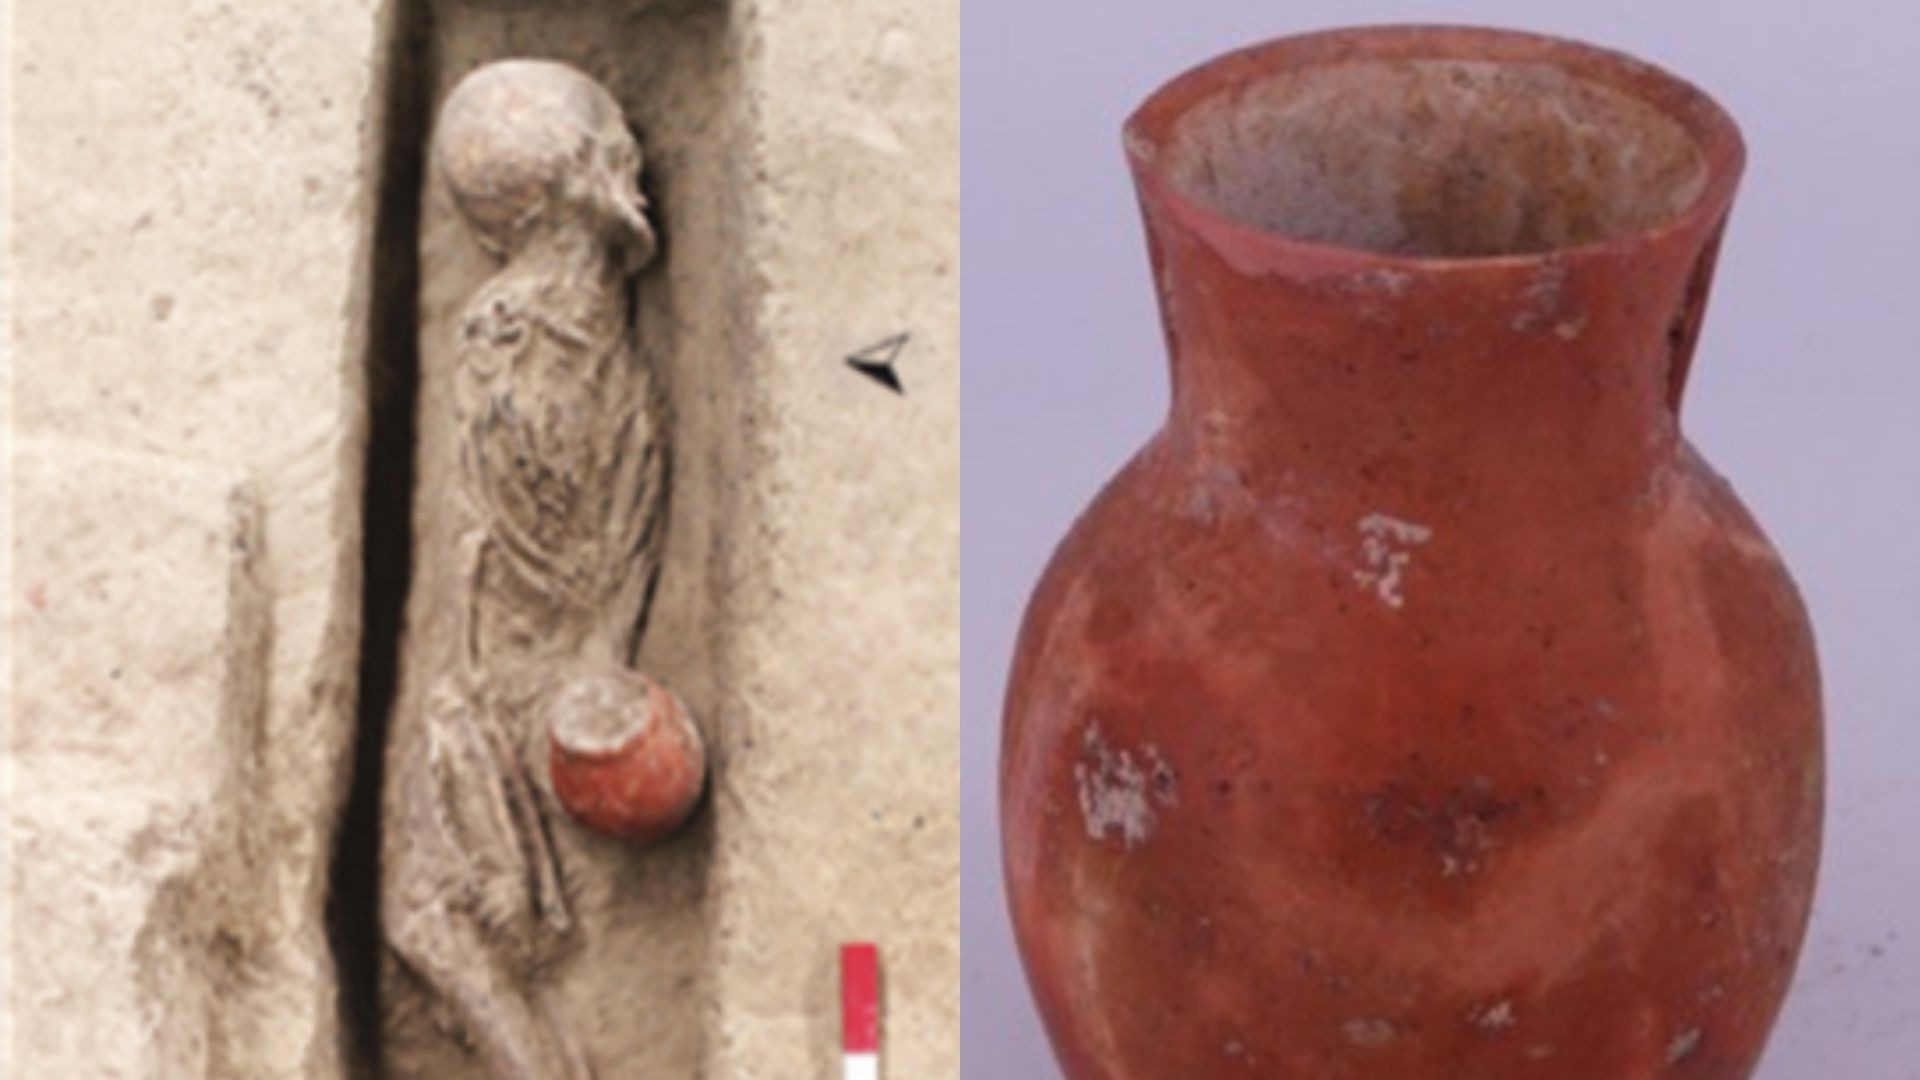 Esqueleto e vaso encontrados em antigo cemitério em Qiaotou, na China  (Foto: Leping Jiang/Leping Jiang)